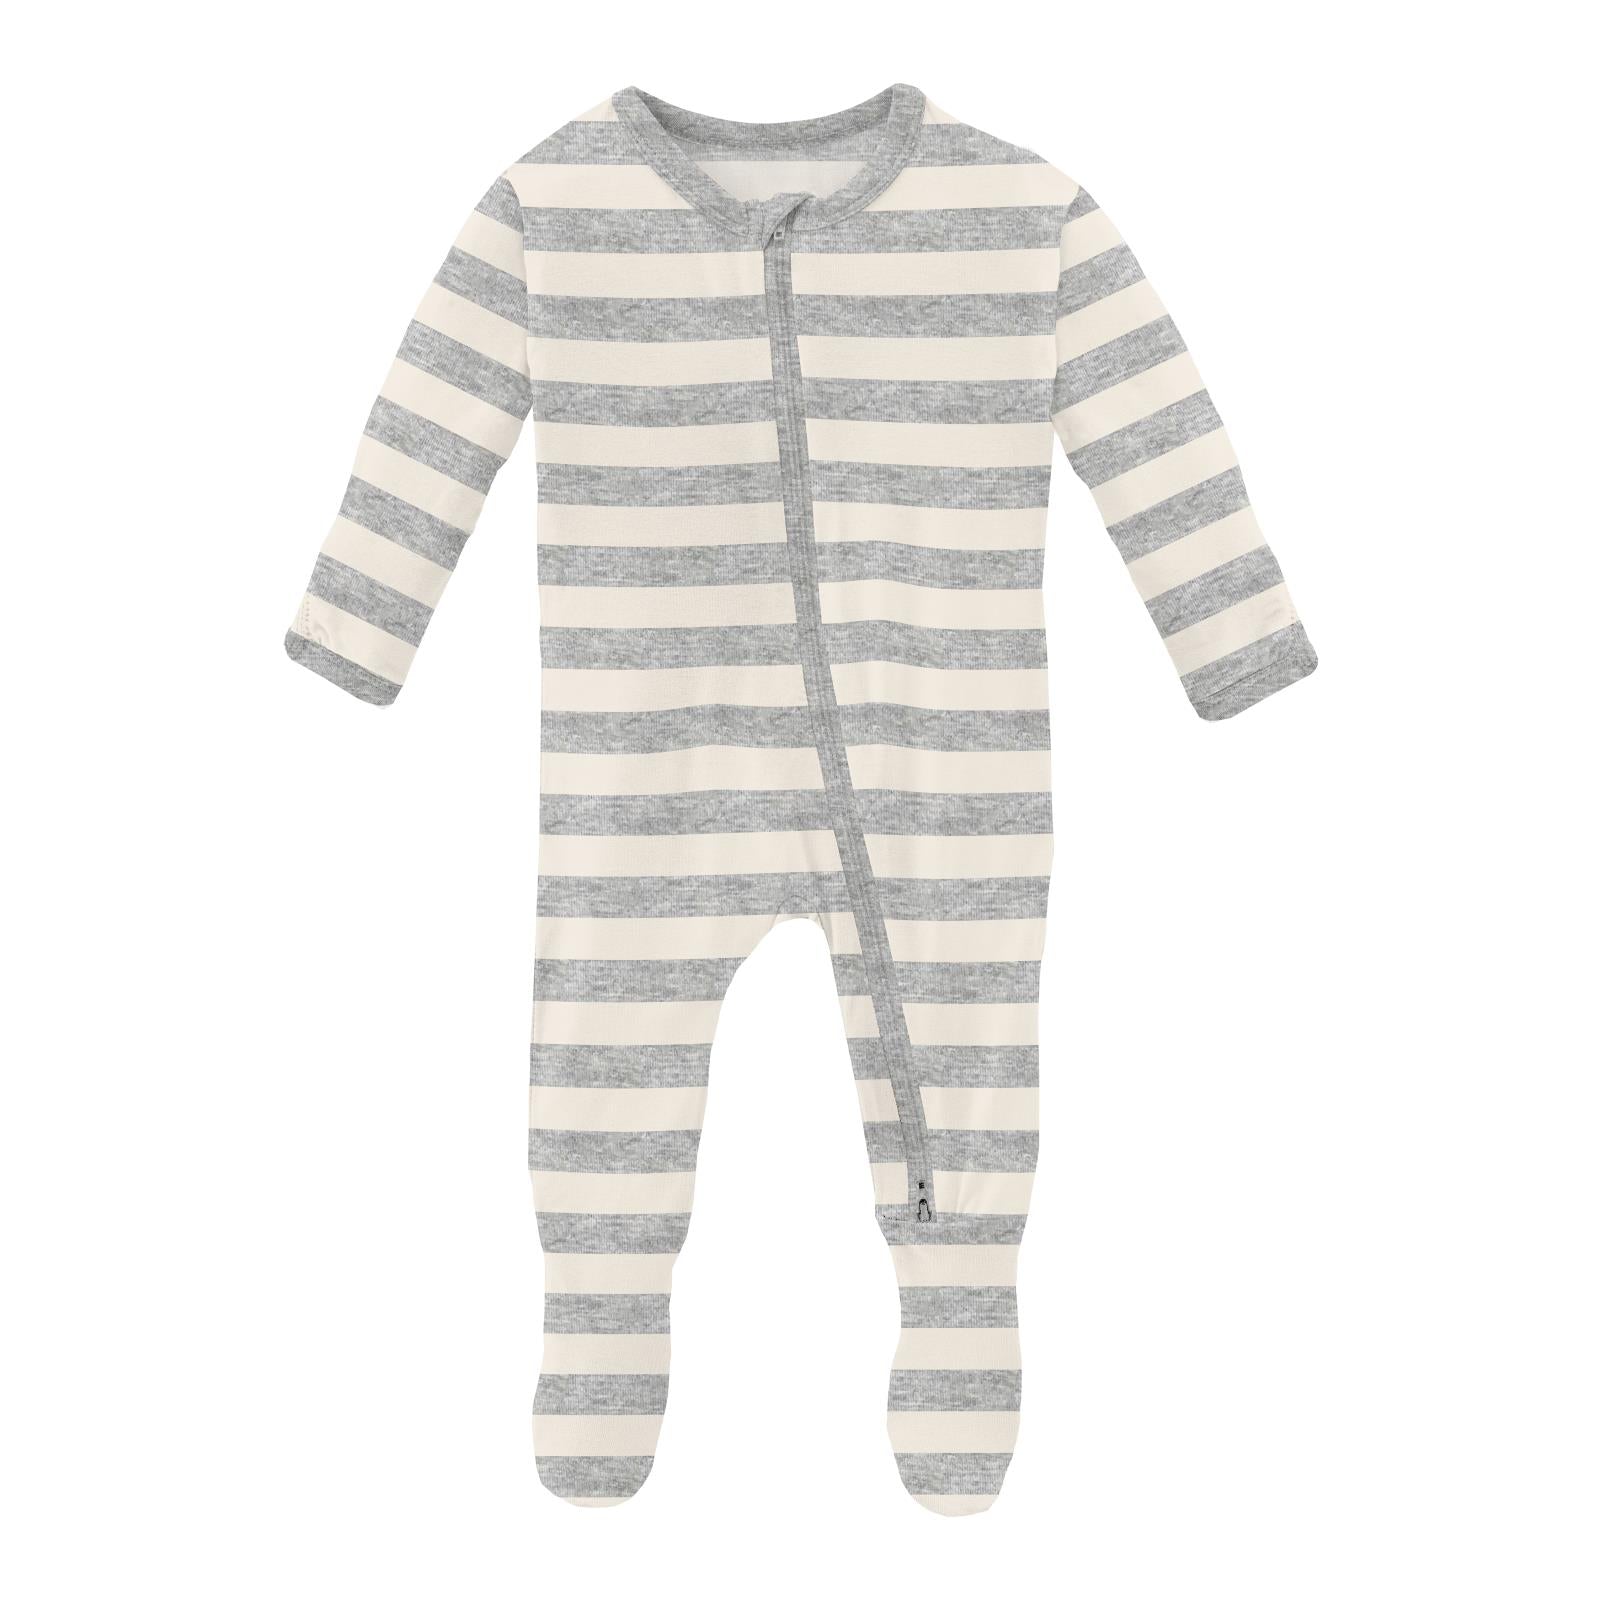 Kickee Pants - Print Footie with Zipper - Heathered Mist Sweet Stripe - Twinkle Twinkle Little One